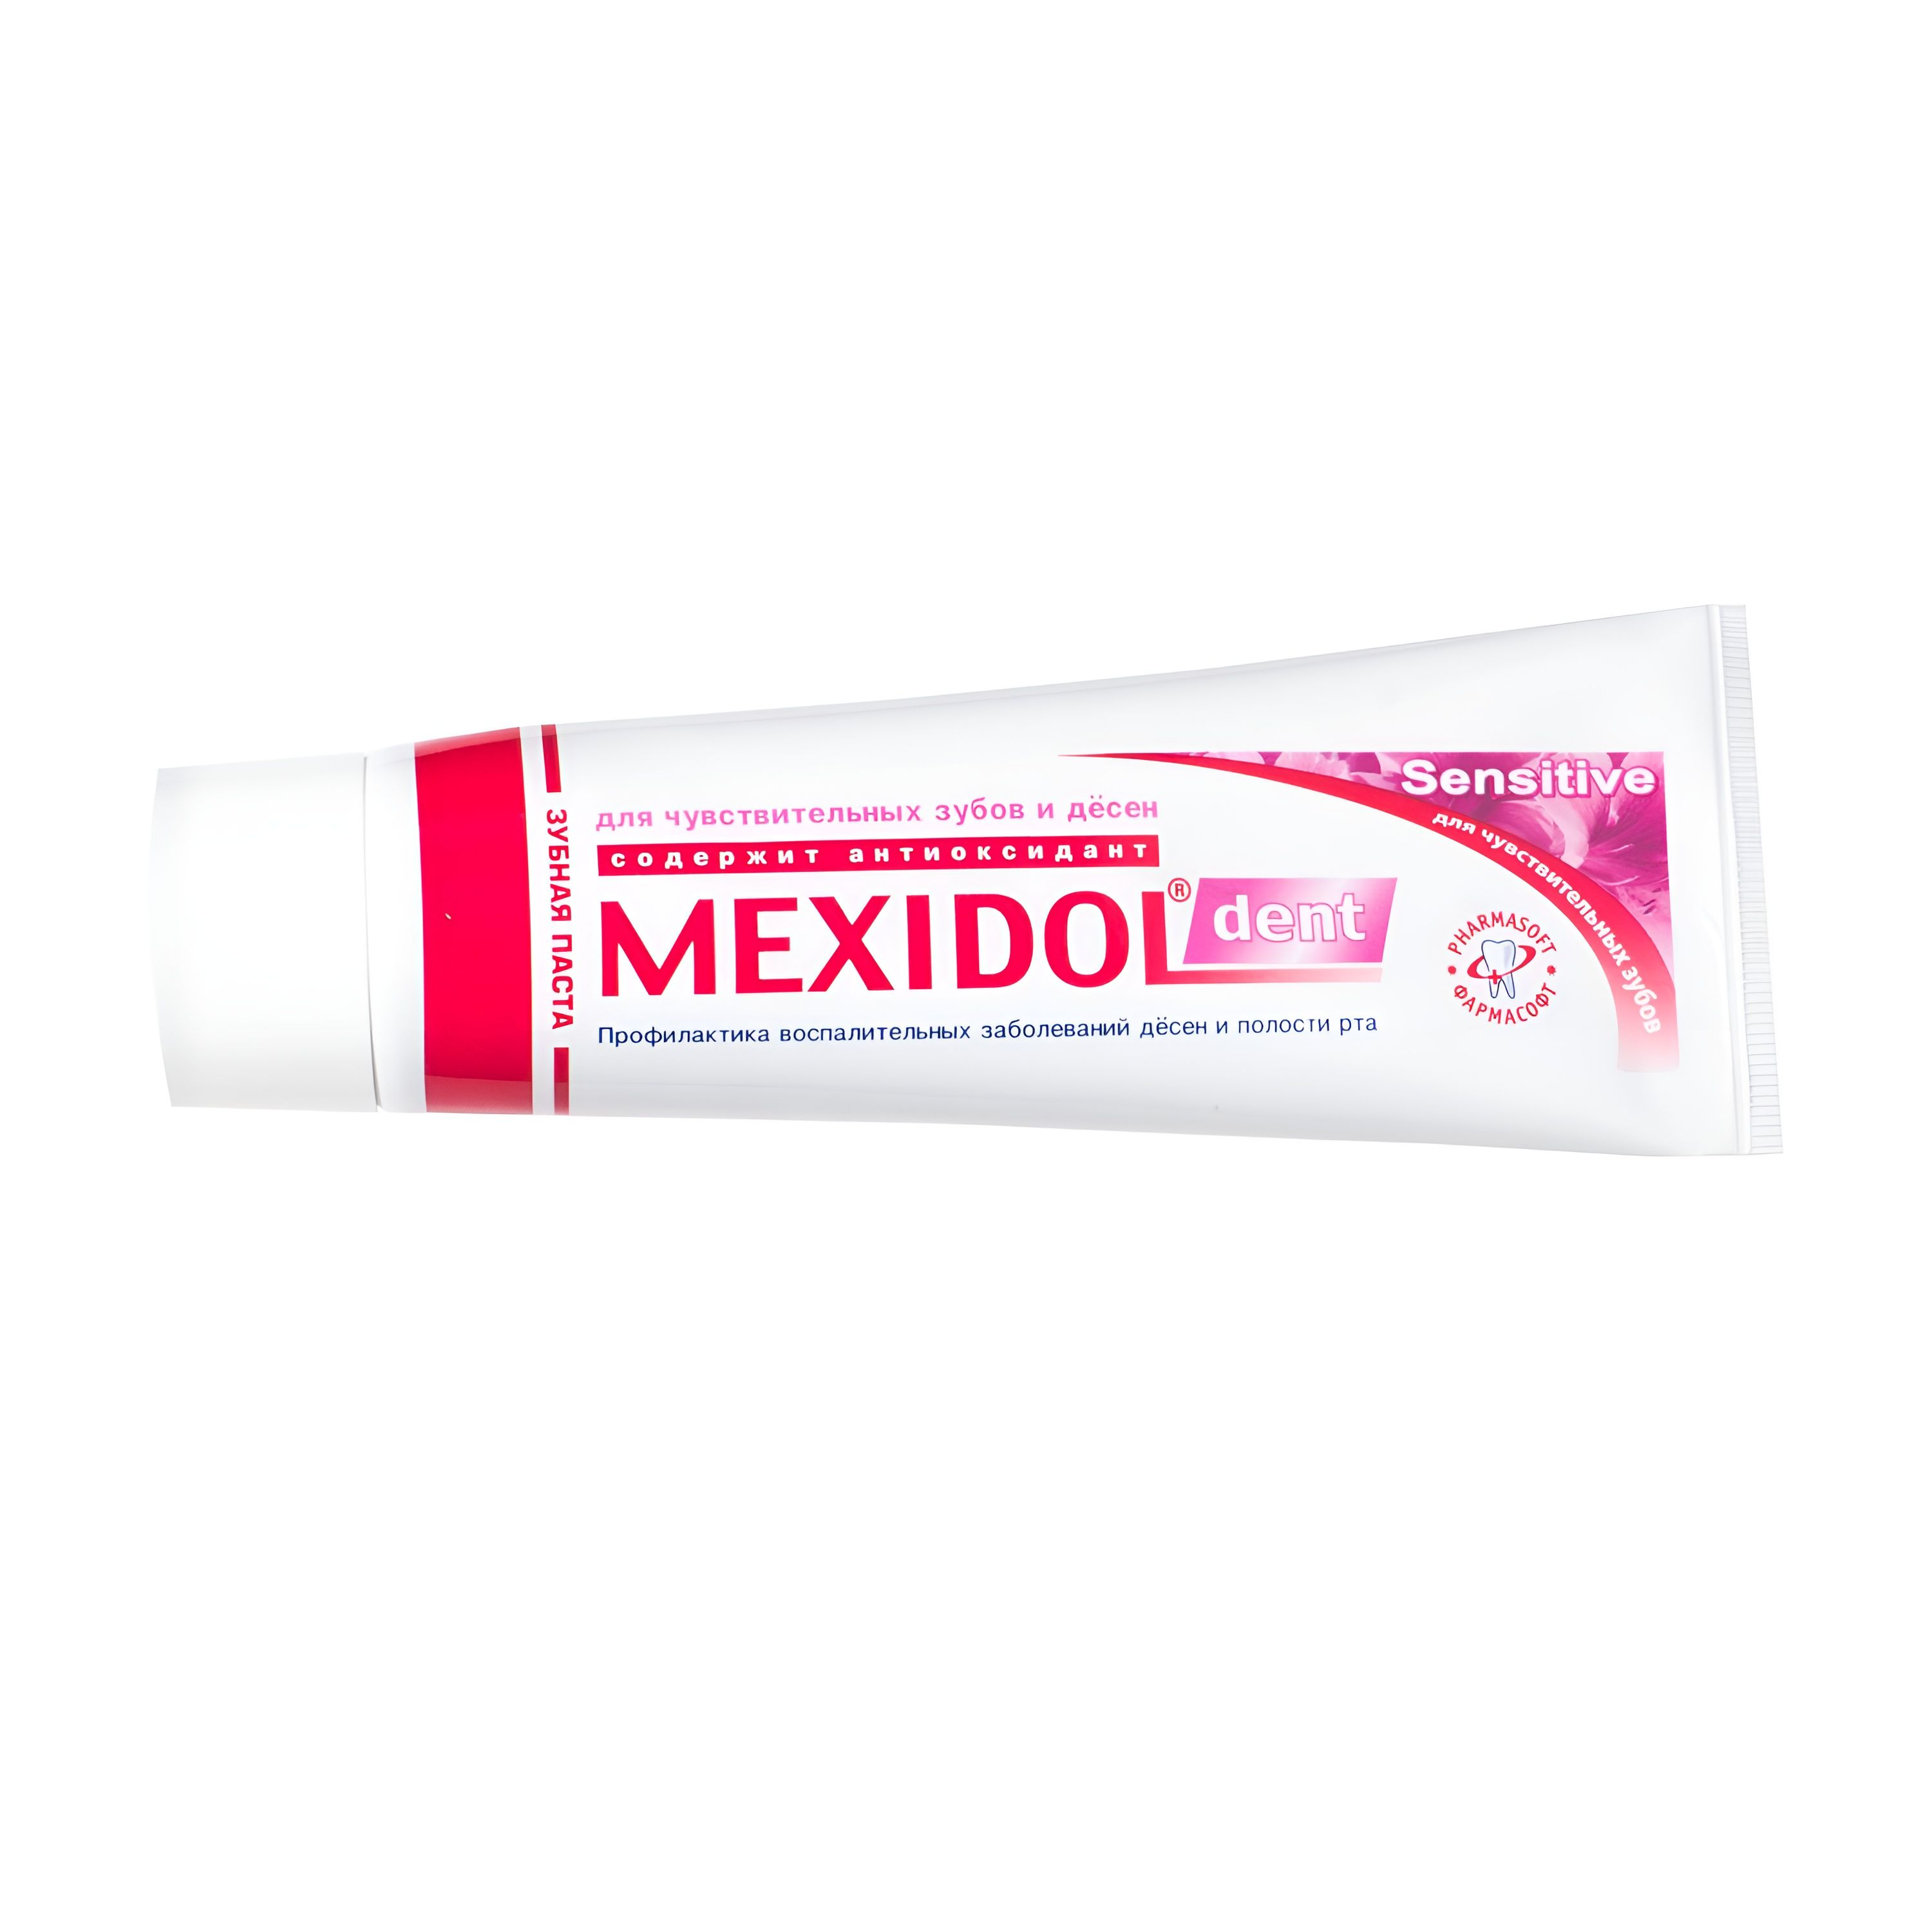 Мексидол Дент Сенситив, зубная паста, 100 г зубная паста mexidol dent activ 65 г